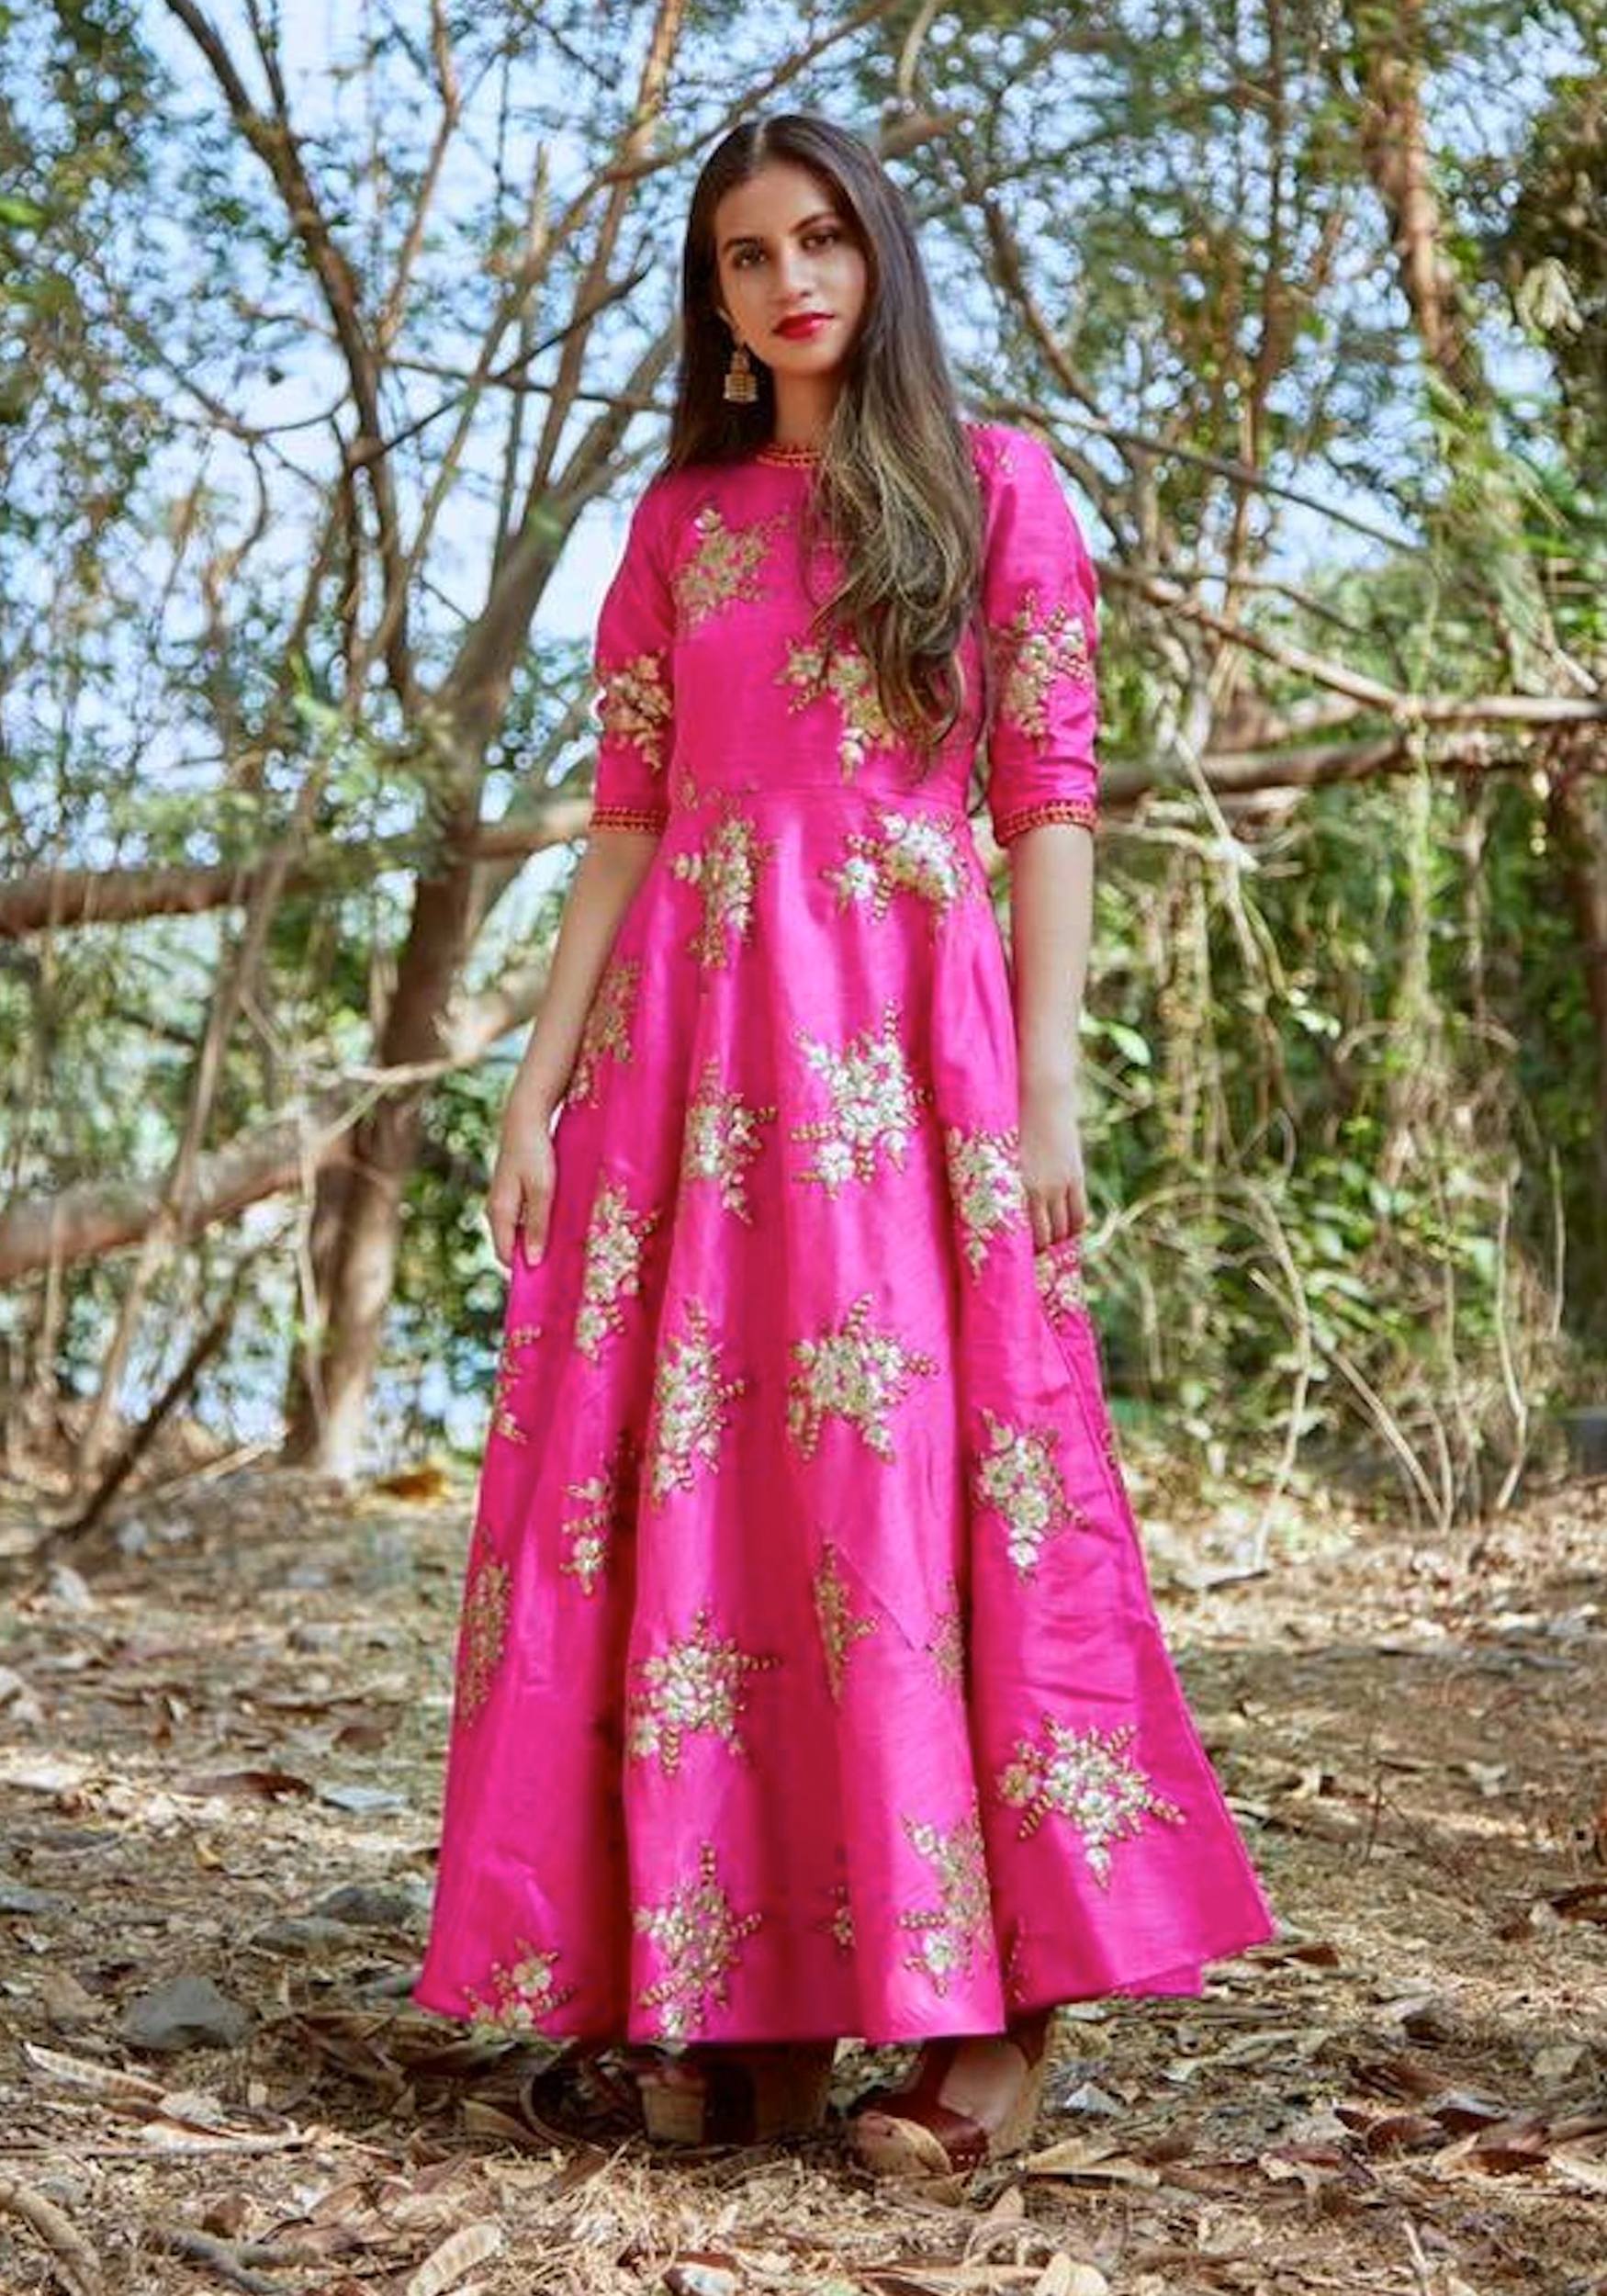 Royal pink dress by Tie ☀ Dye Tale ...